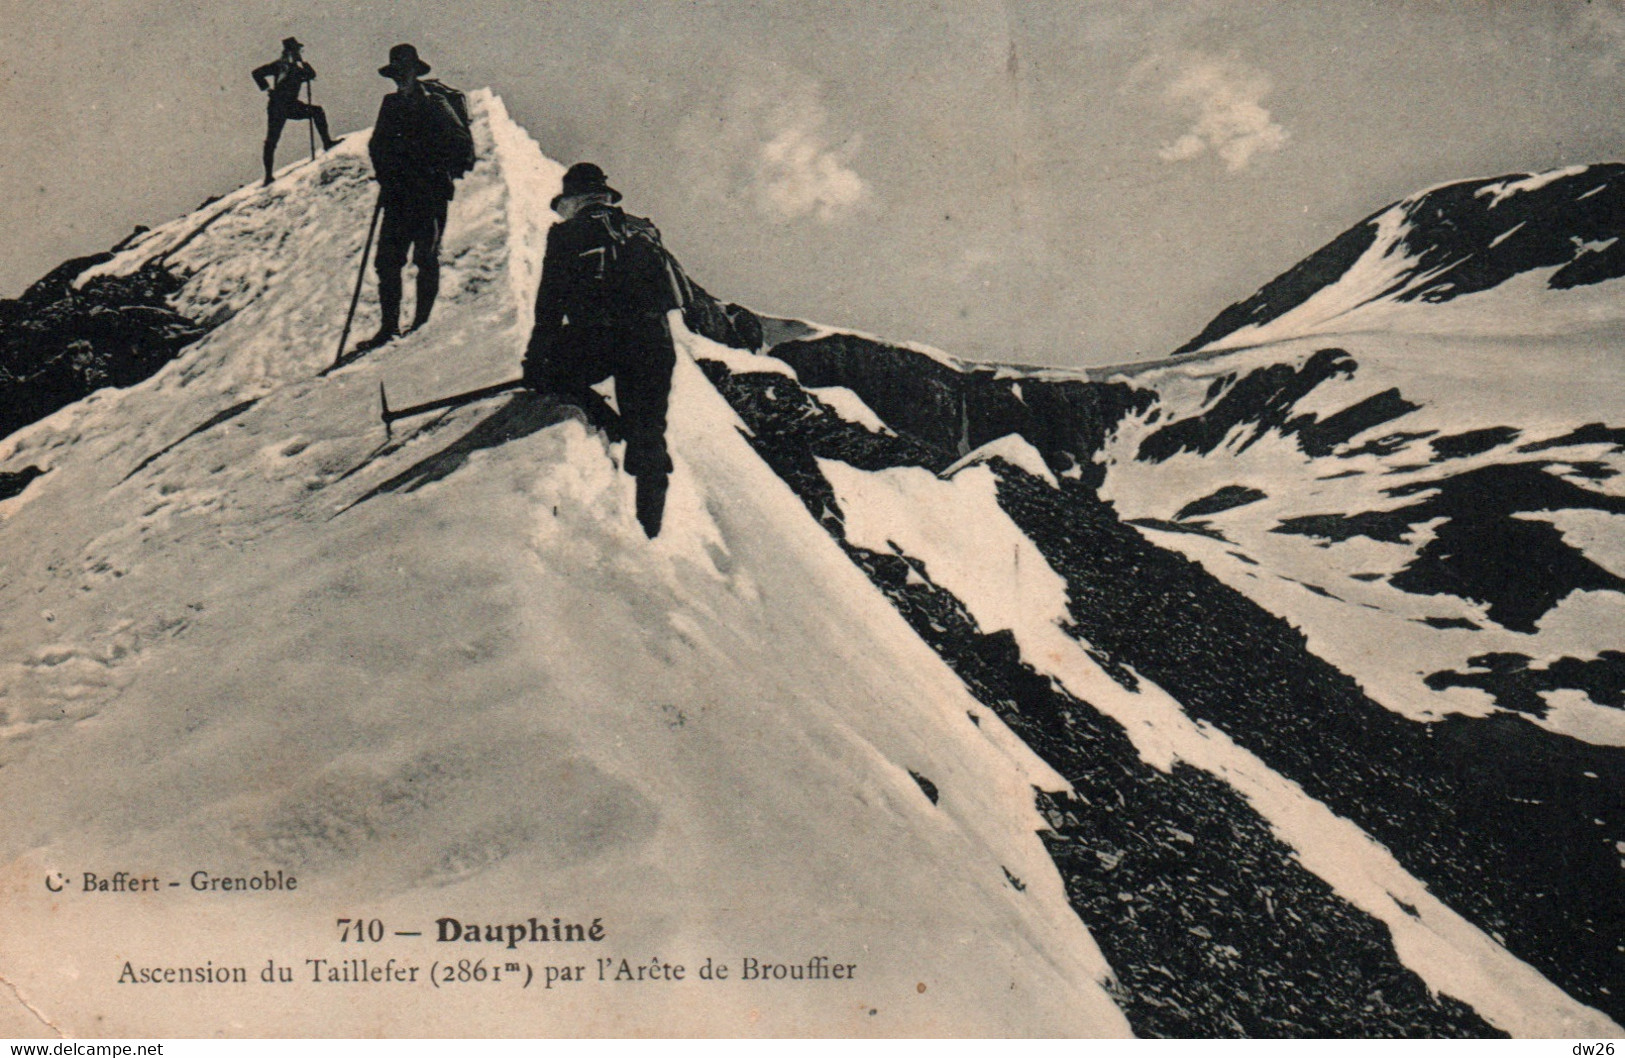 Alpinisme Dauphiné (Isère) Ascension Du Taillefer Par L'Arête De Brouffier - Edition C. Baffert - Carte N° 710 - Alpinisme